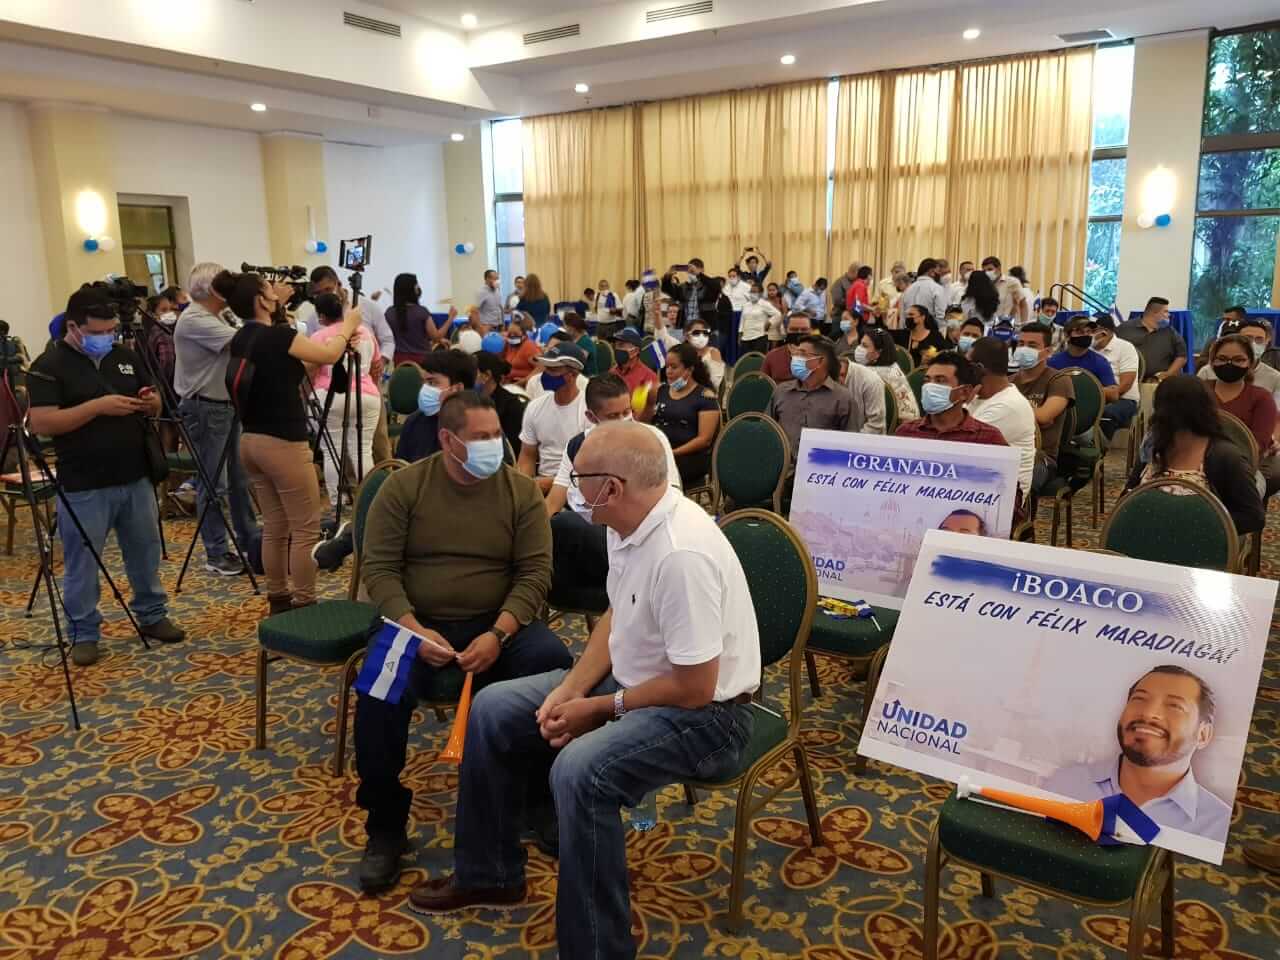 Medios escritos, televisivos y digitales brindaron cobertura llanzamientode la campaña política de Félix Maradiaga / Foto: Nicaragua Actual